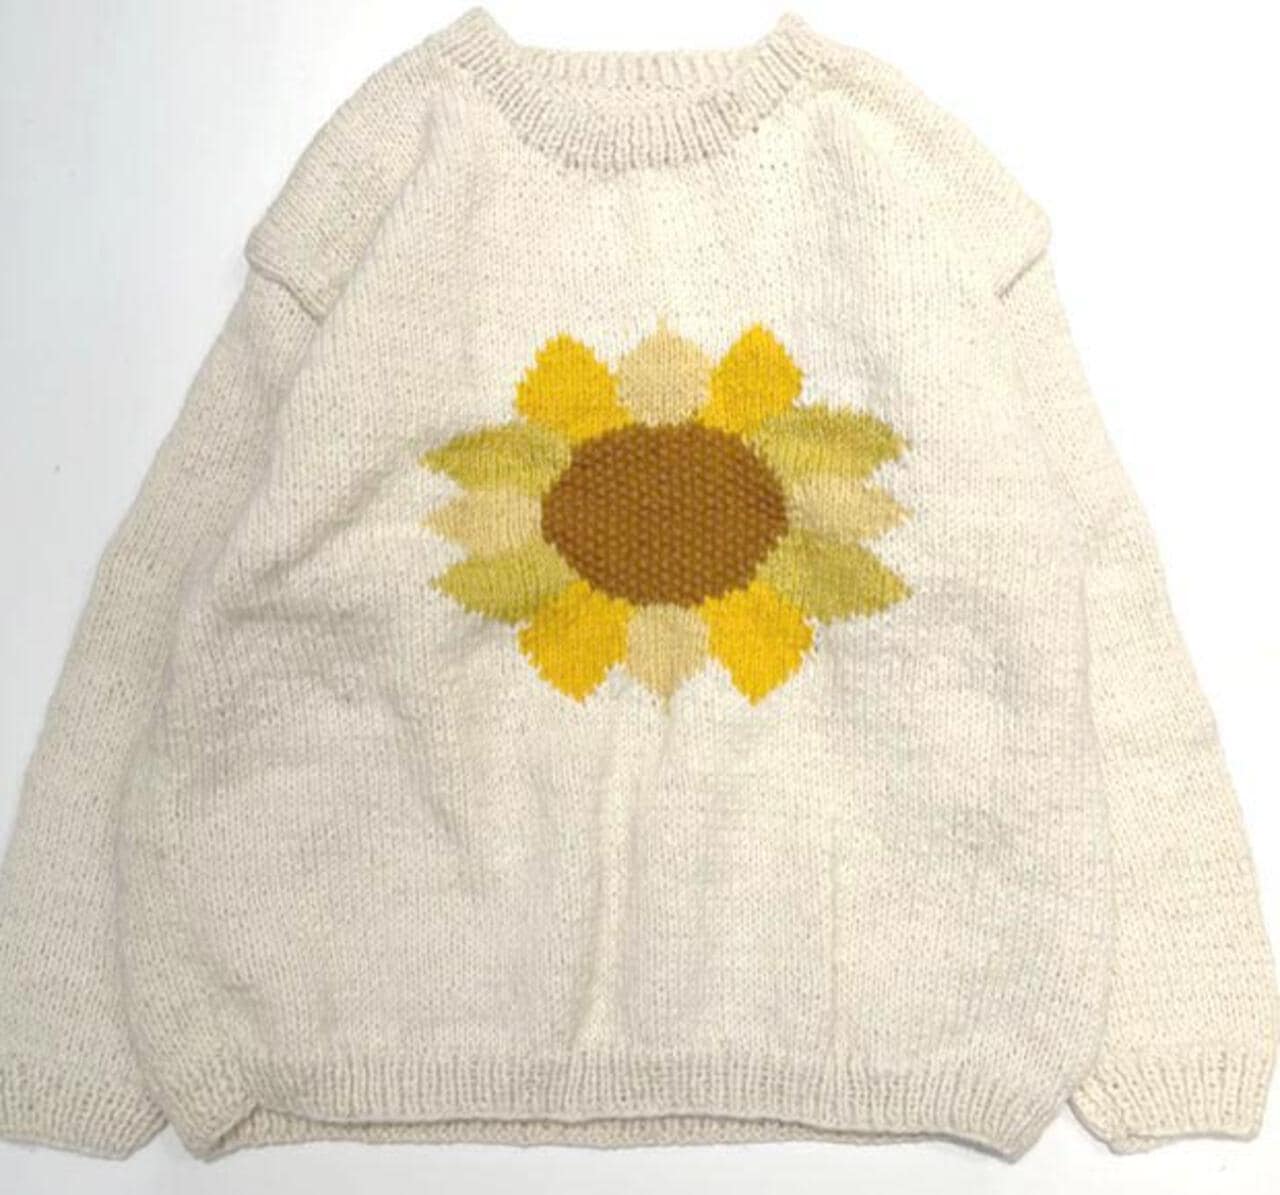 MacMahon Knitting Mills / Crew Neck Knit-Sunflower | B'2nd ( ビー